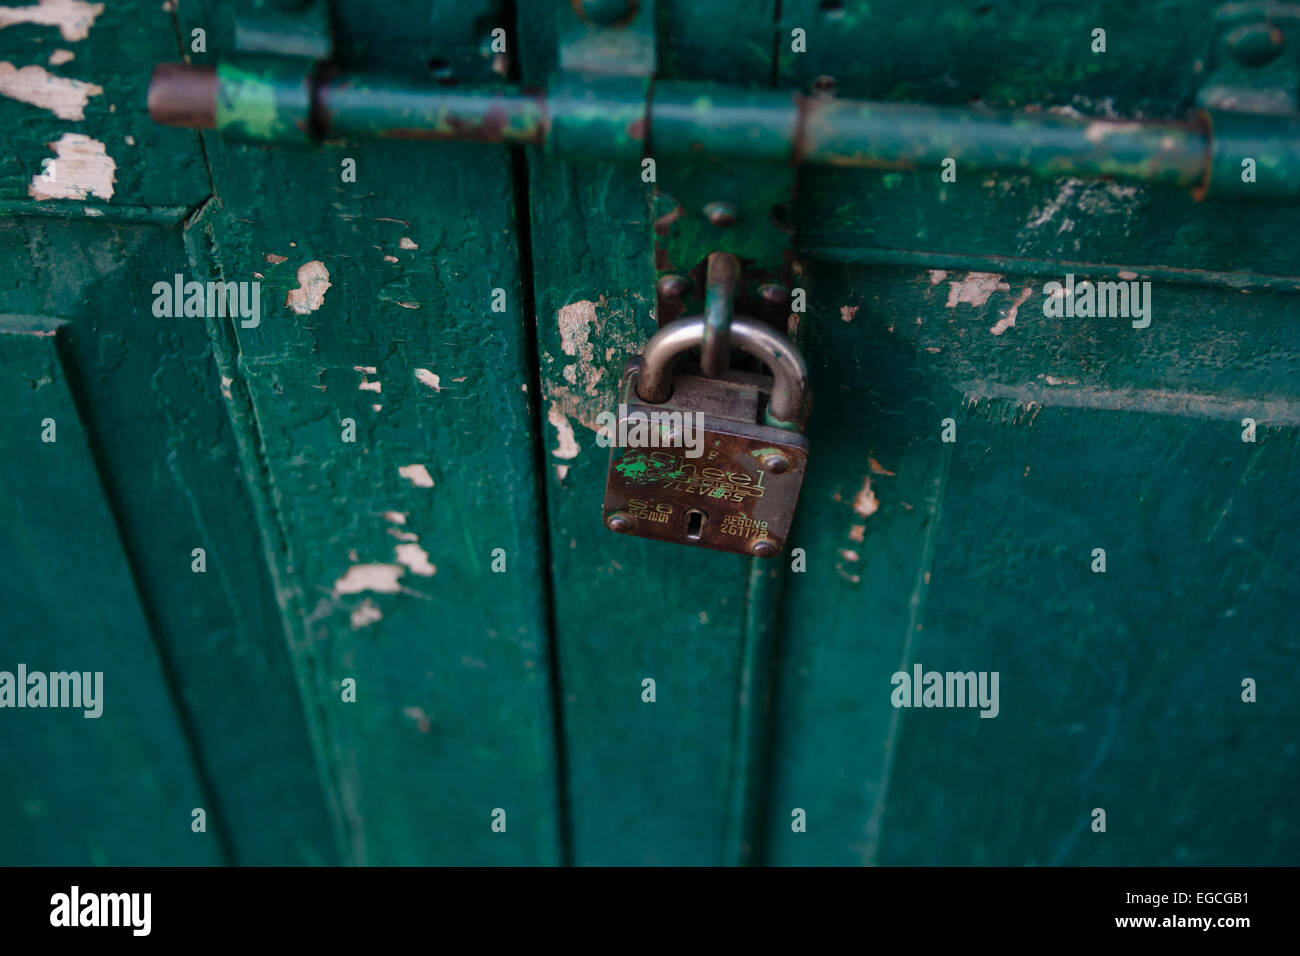 Green Door with padlock Stock Photo